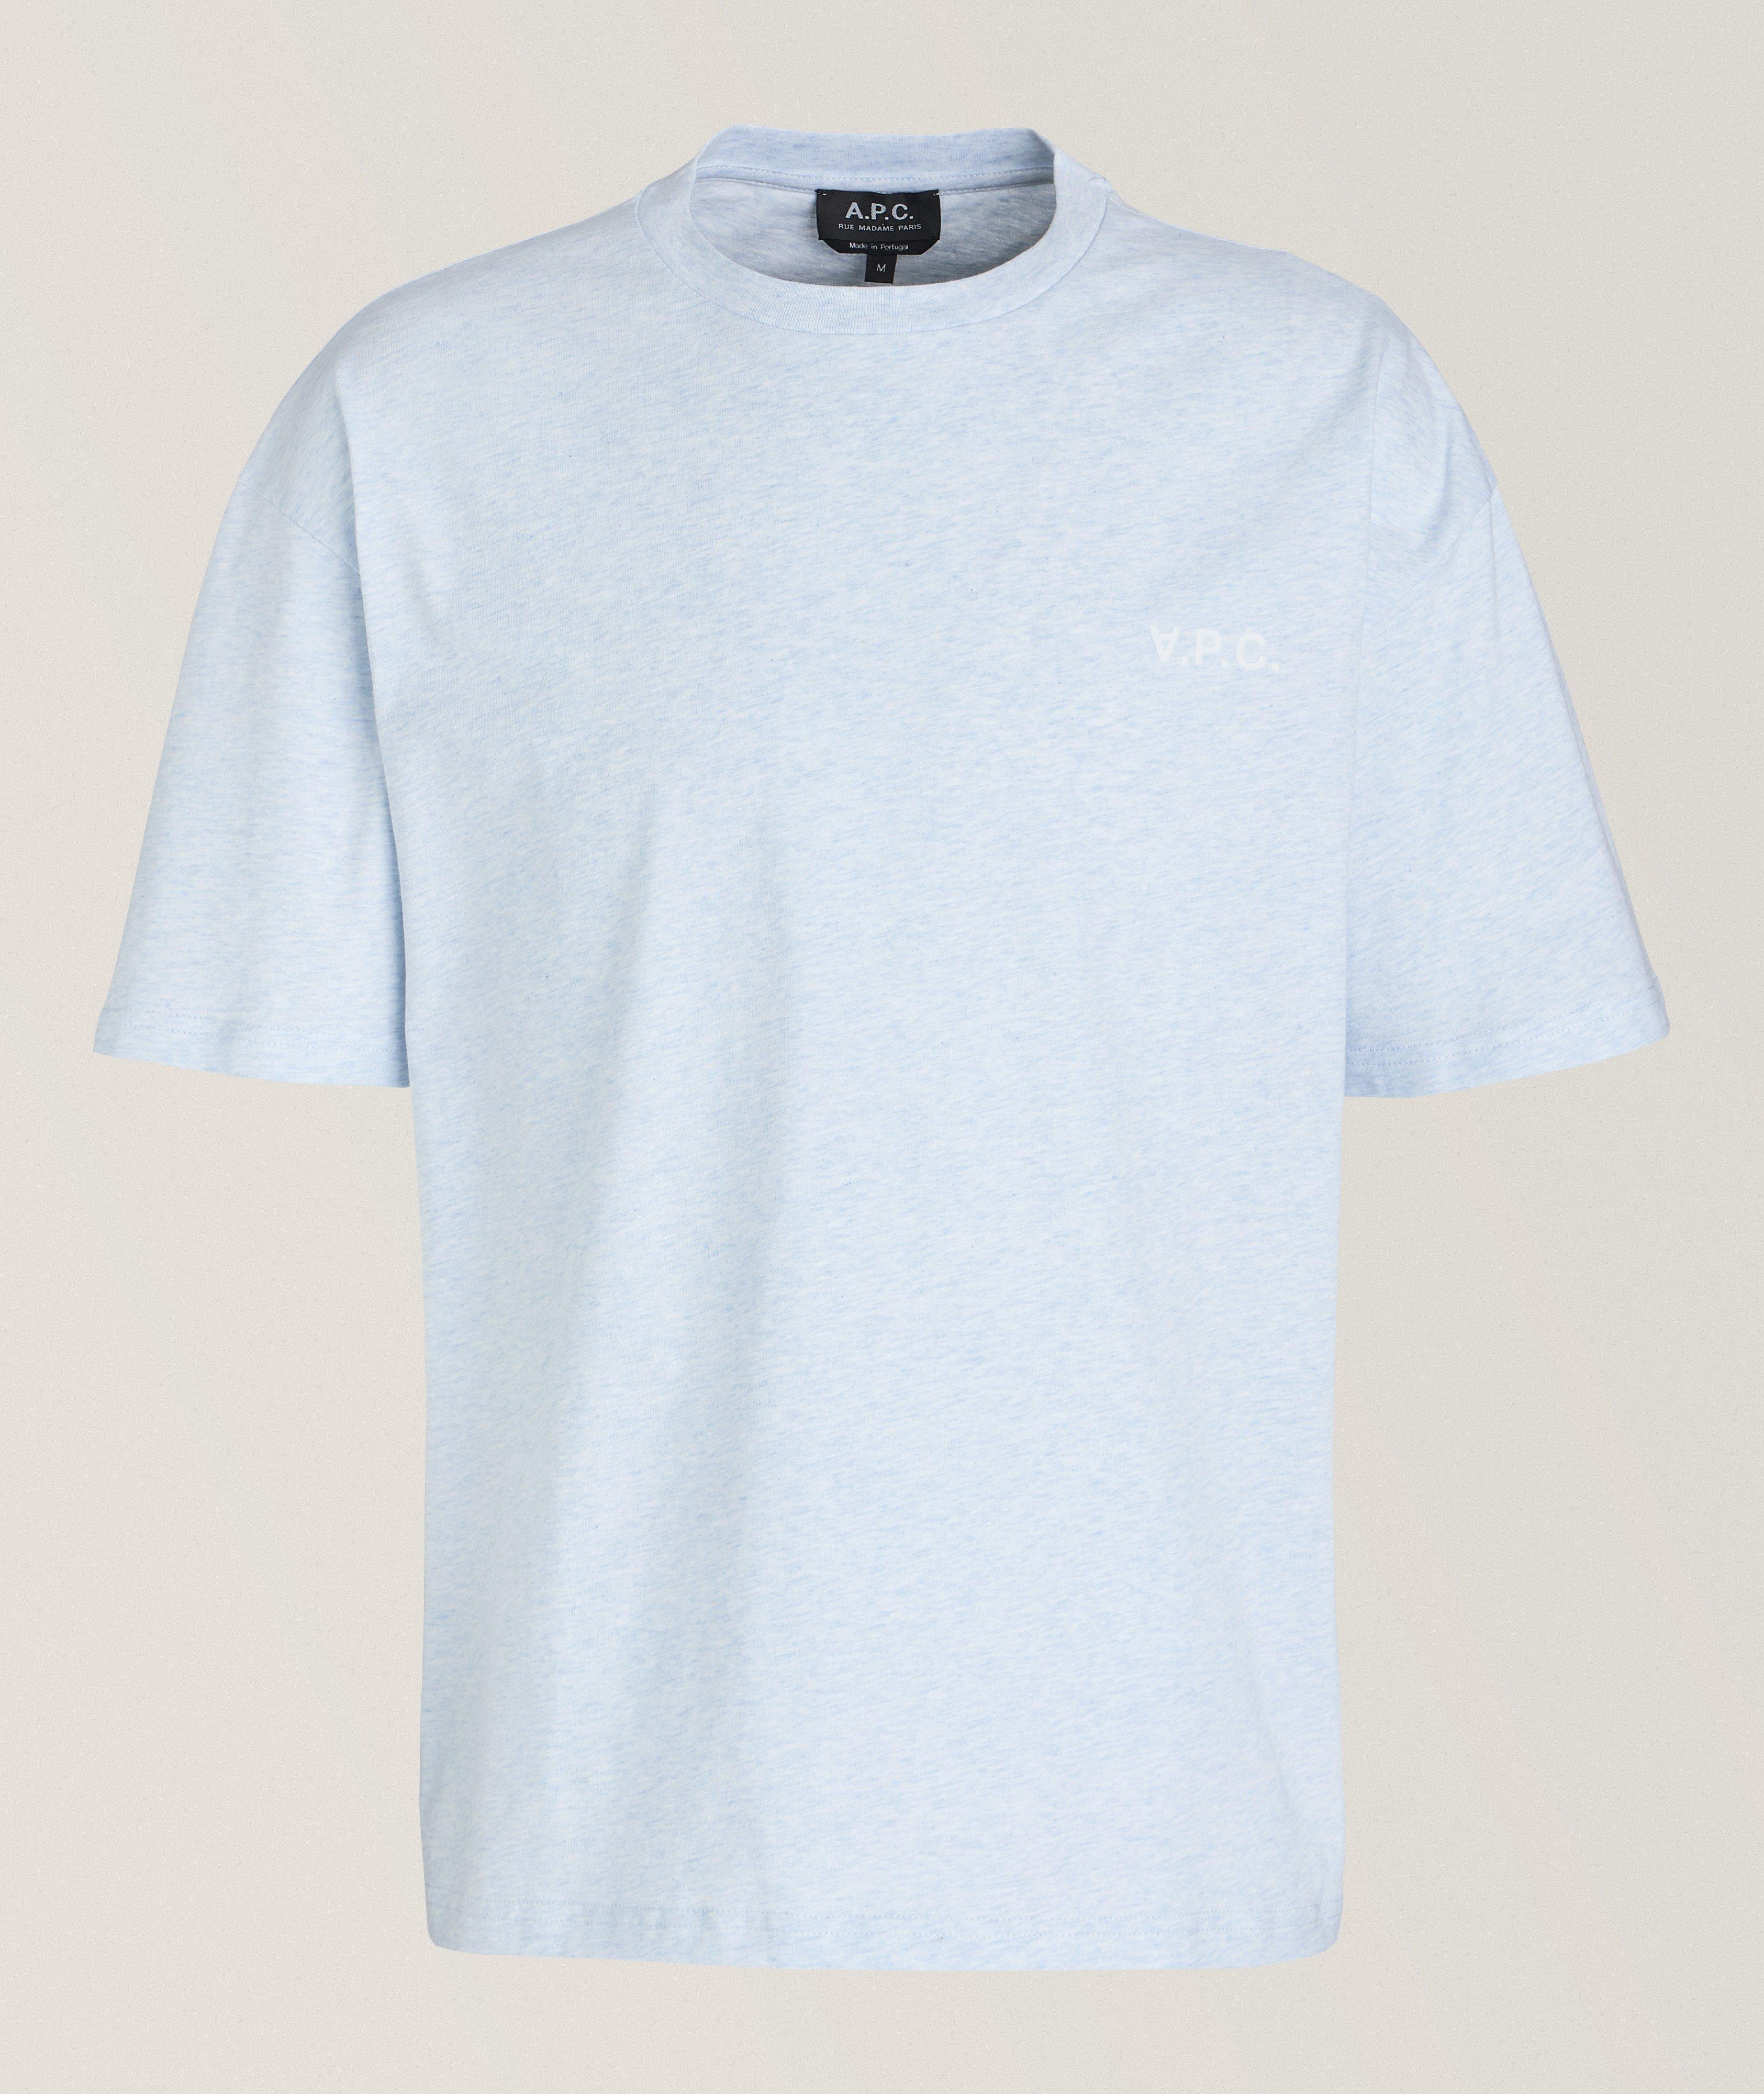 New Joachim Mélange Cotton T-Shirt image 0